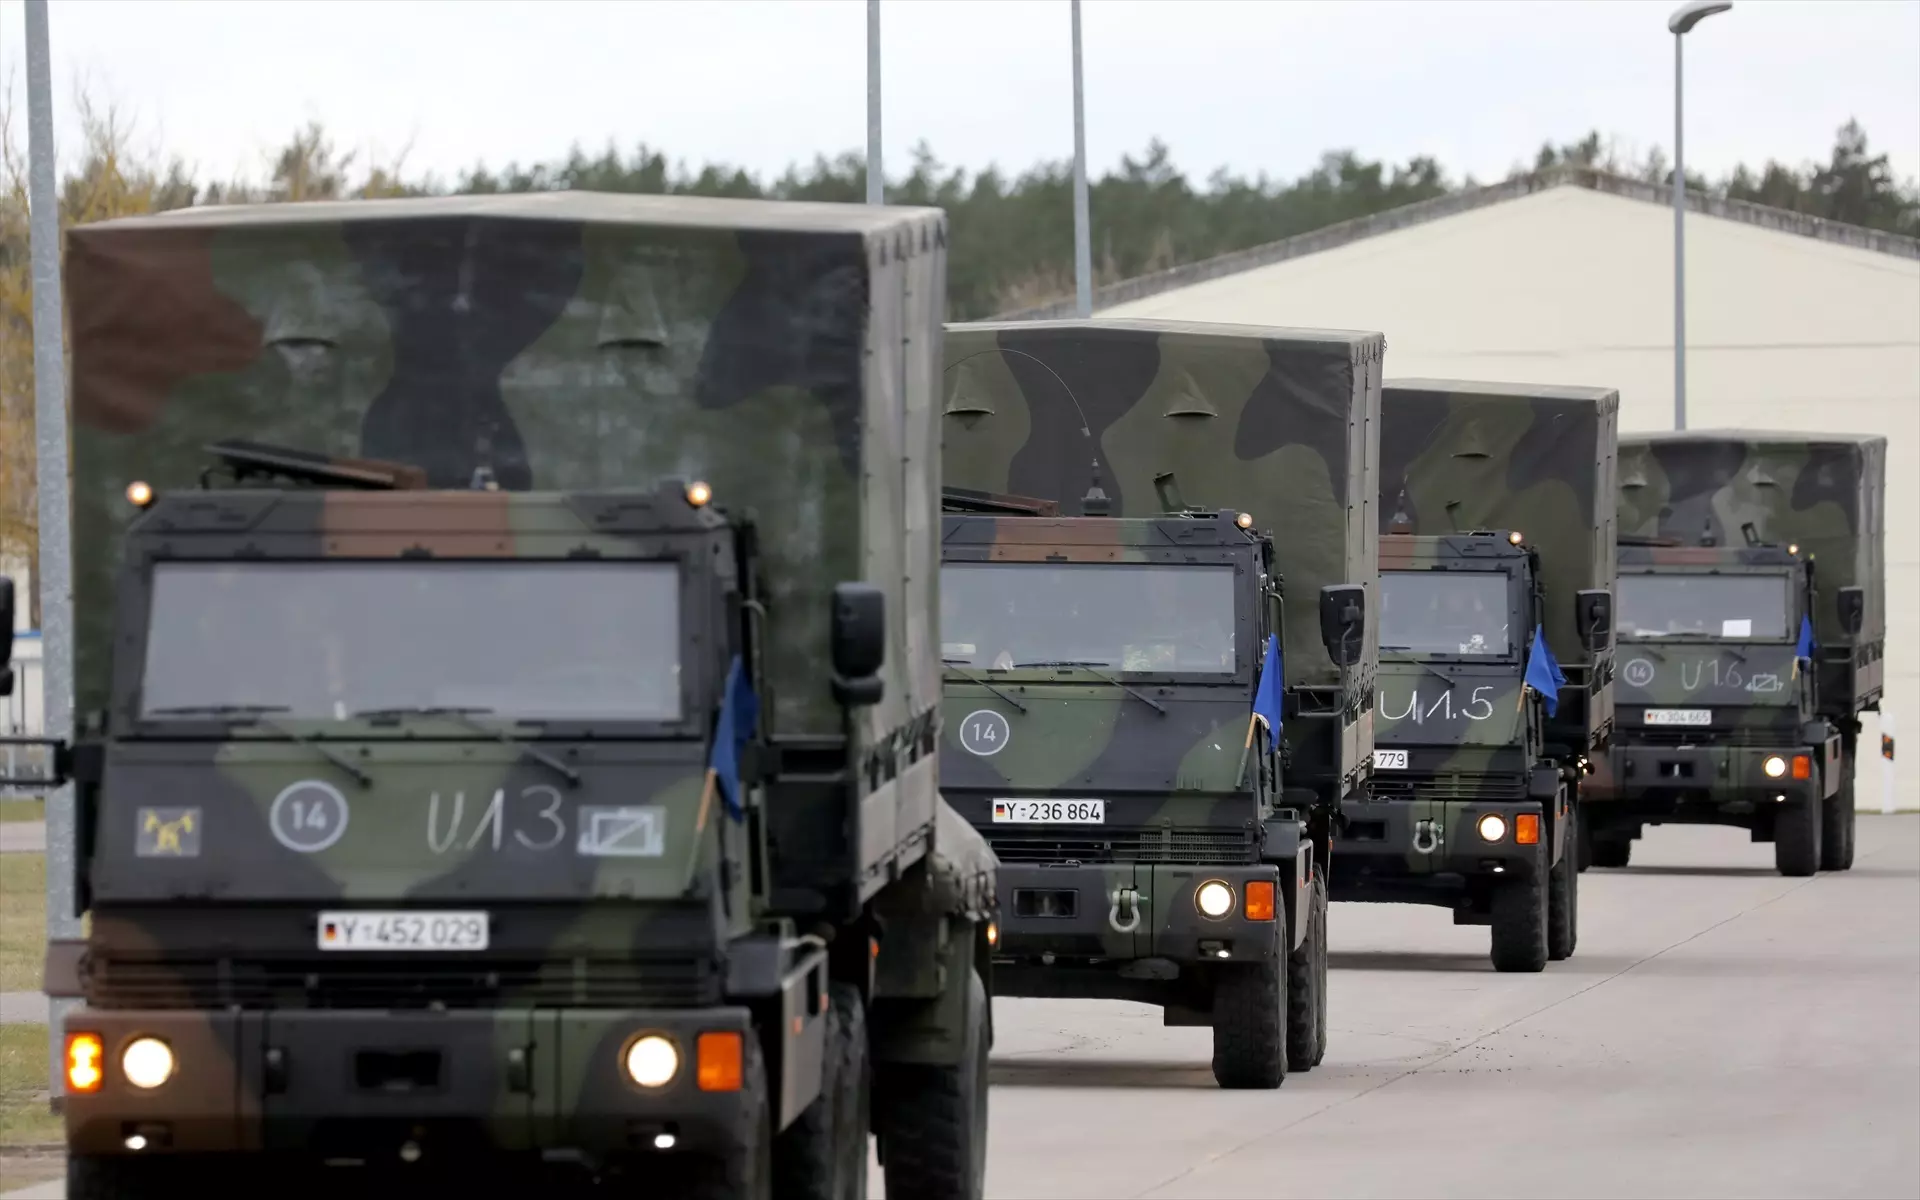 Foto de archivo de varios vehículos militares de la OTAN en Polonia. — Europa Press